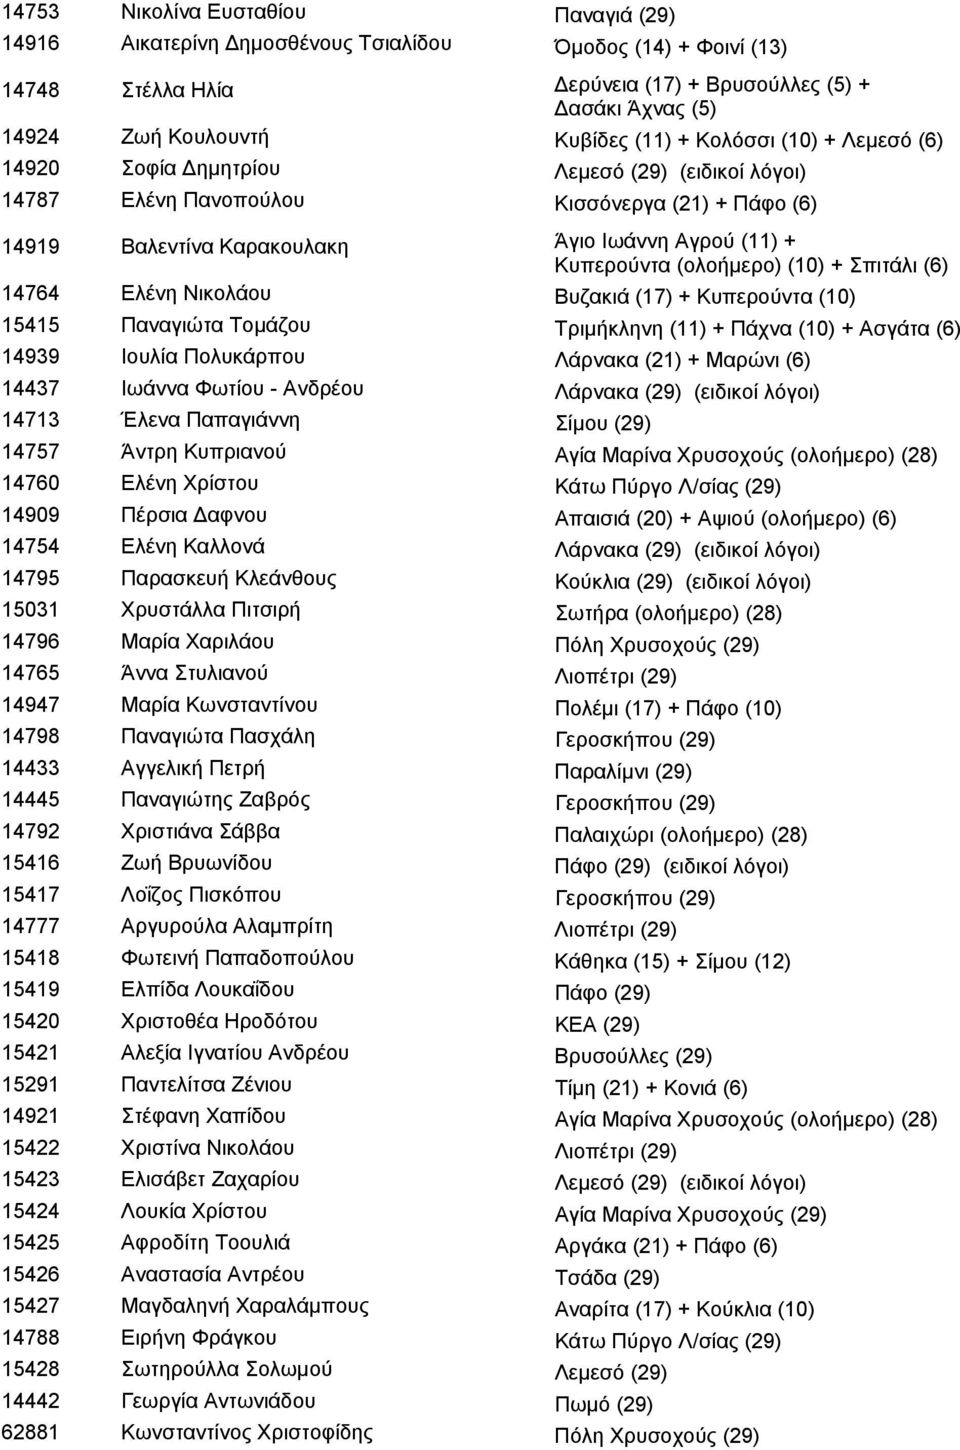 (ολοήμερο) (10) + Σπιτάλι (6) 14764 Ελένη Νικολάου Βυζακιά (17) + Κυπερούντα (10) 15415 Παναγιώτα Τομάζου Τριμήκληνη (11) + Πάχνα (10) + Ασγάτα (6) 14939 Ιουλία Πολυκάρπου Λάρνακα (21) + Μαρώνι (6)